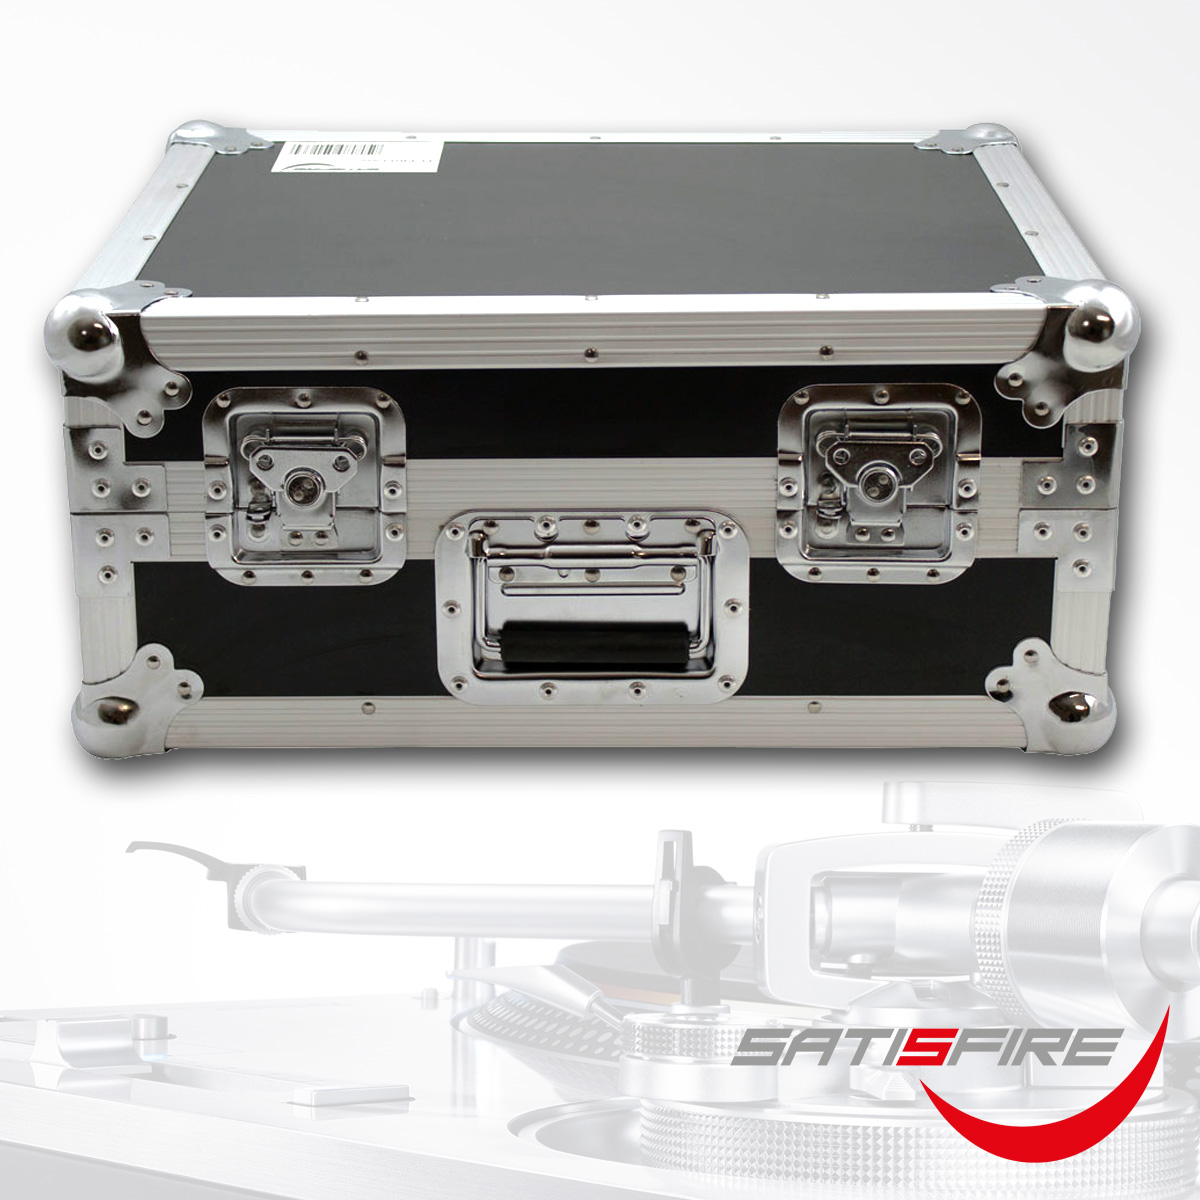 TT-PRO Case - professionelles Flightcase für Plattenspieler | Transportkoffer